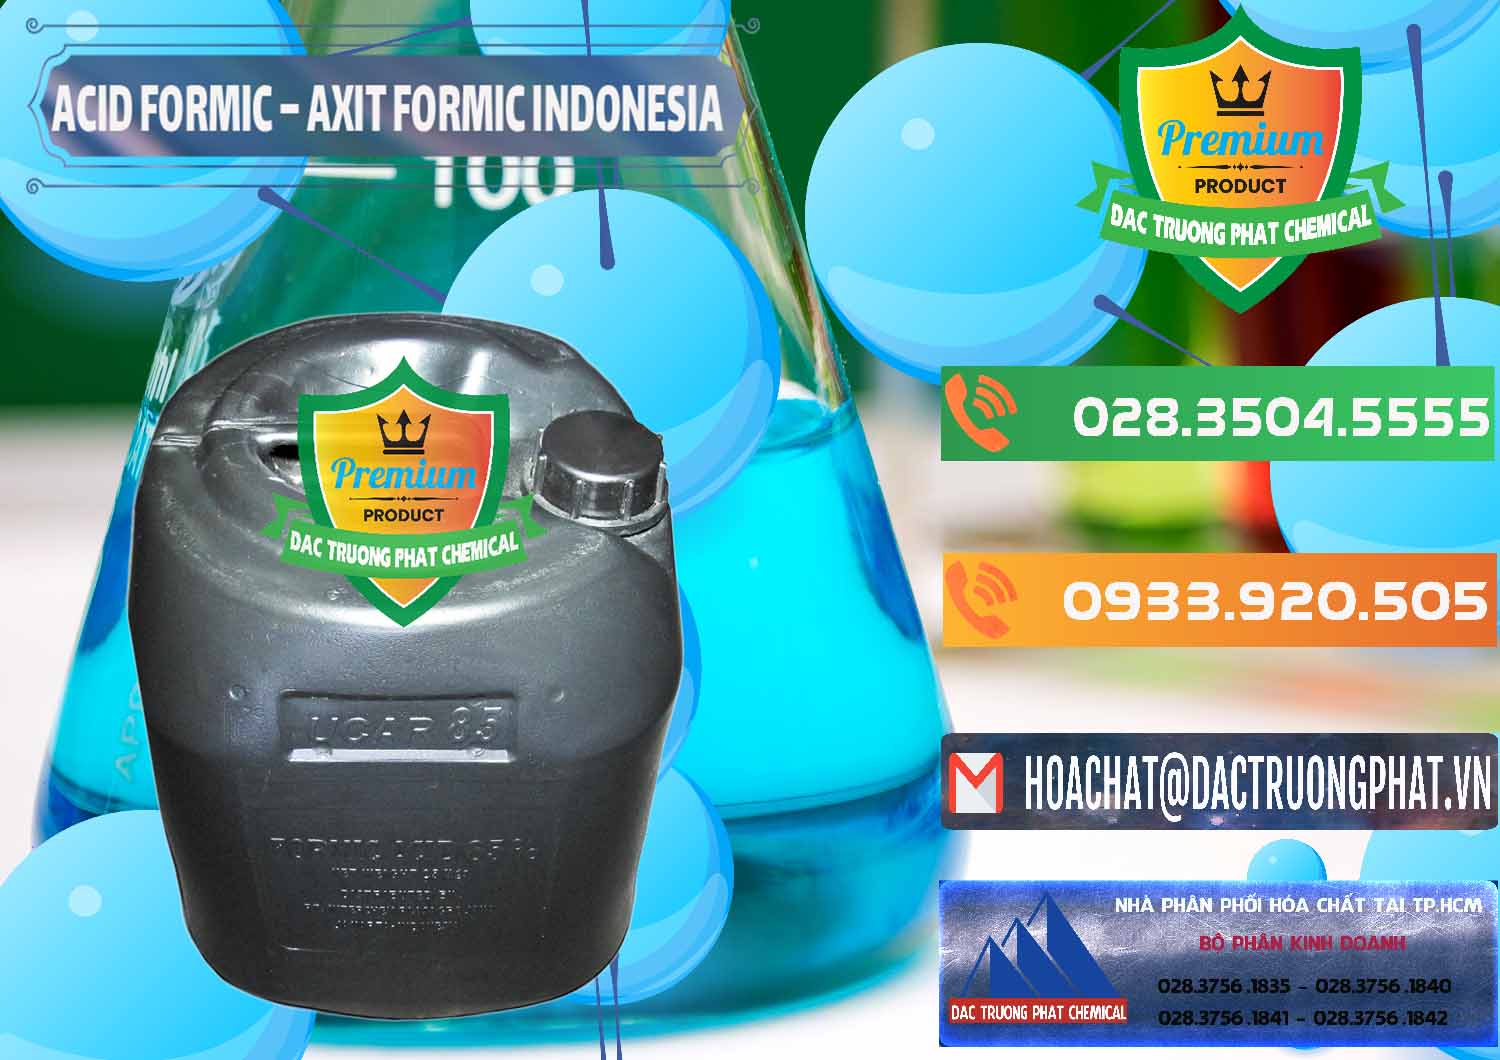 Phân phối & bán Acid Formic - Axit Formic Indonesia - 0026 - Cty chuyên cung cấp & kinh doanh hóa chất tại TP.HCM - hoachatxulynuoc.com.vn